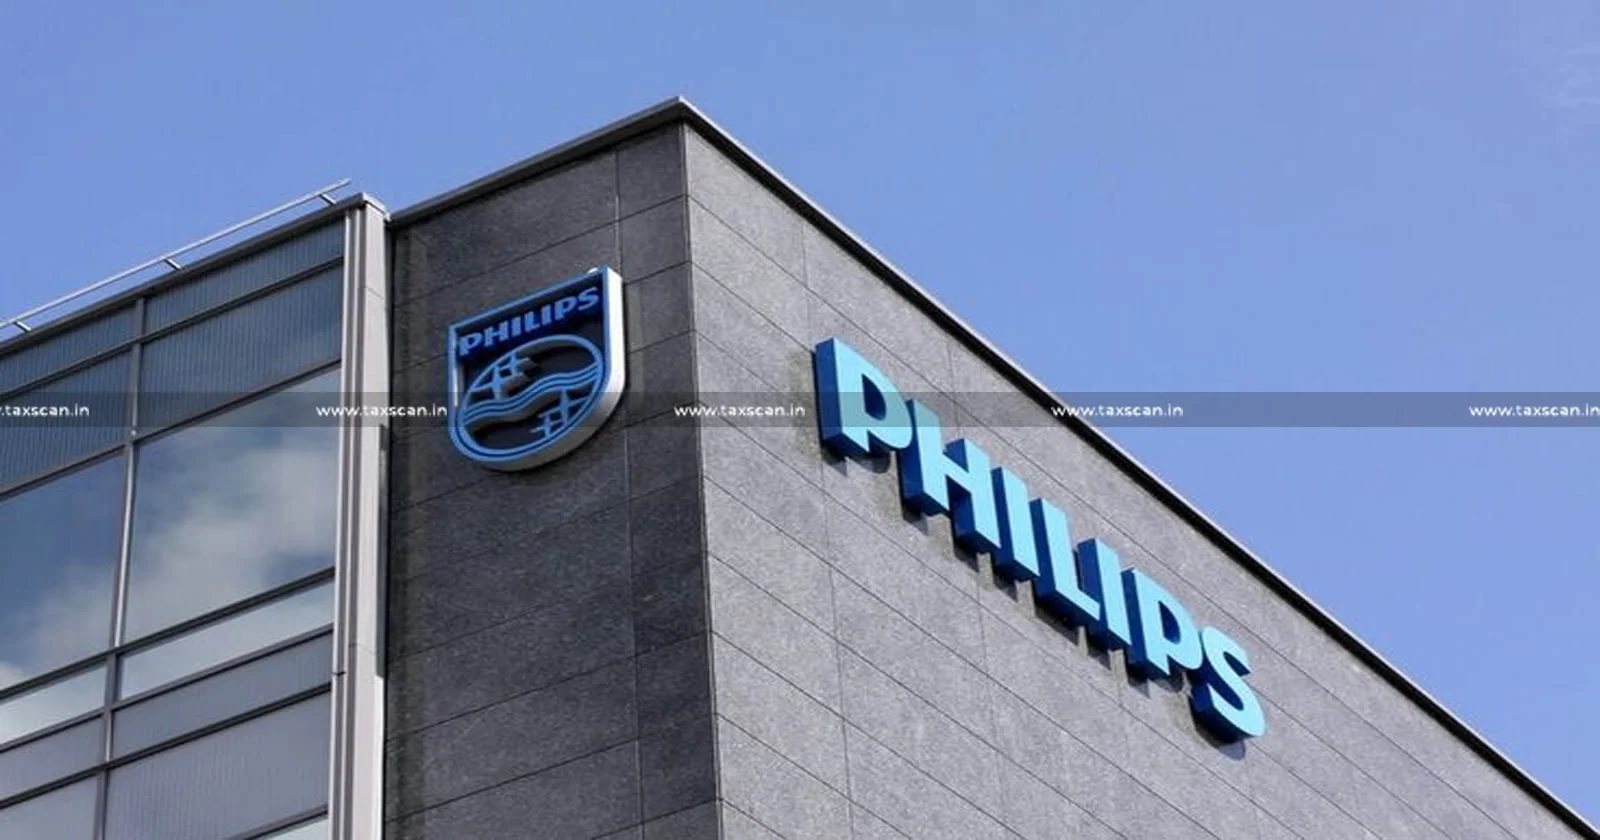 MBA Vacancy in Philips - MBA Hiring in Philips - Jobscan - Vacancy in Philips - taxscan